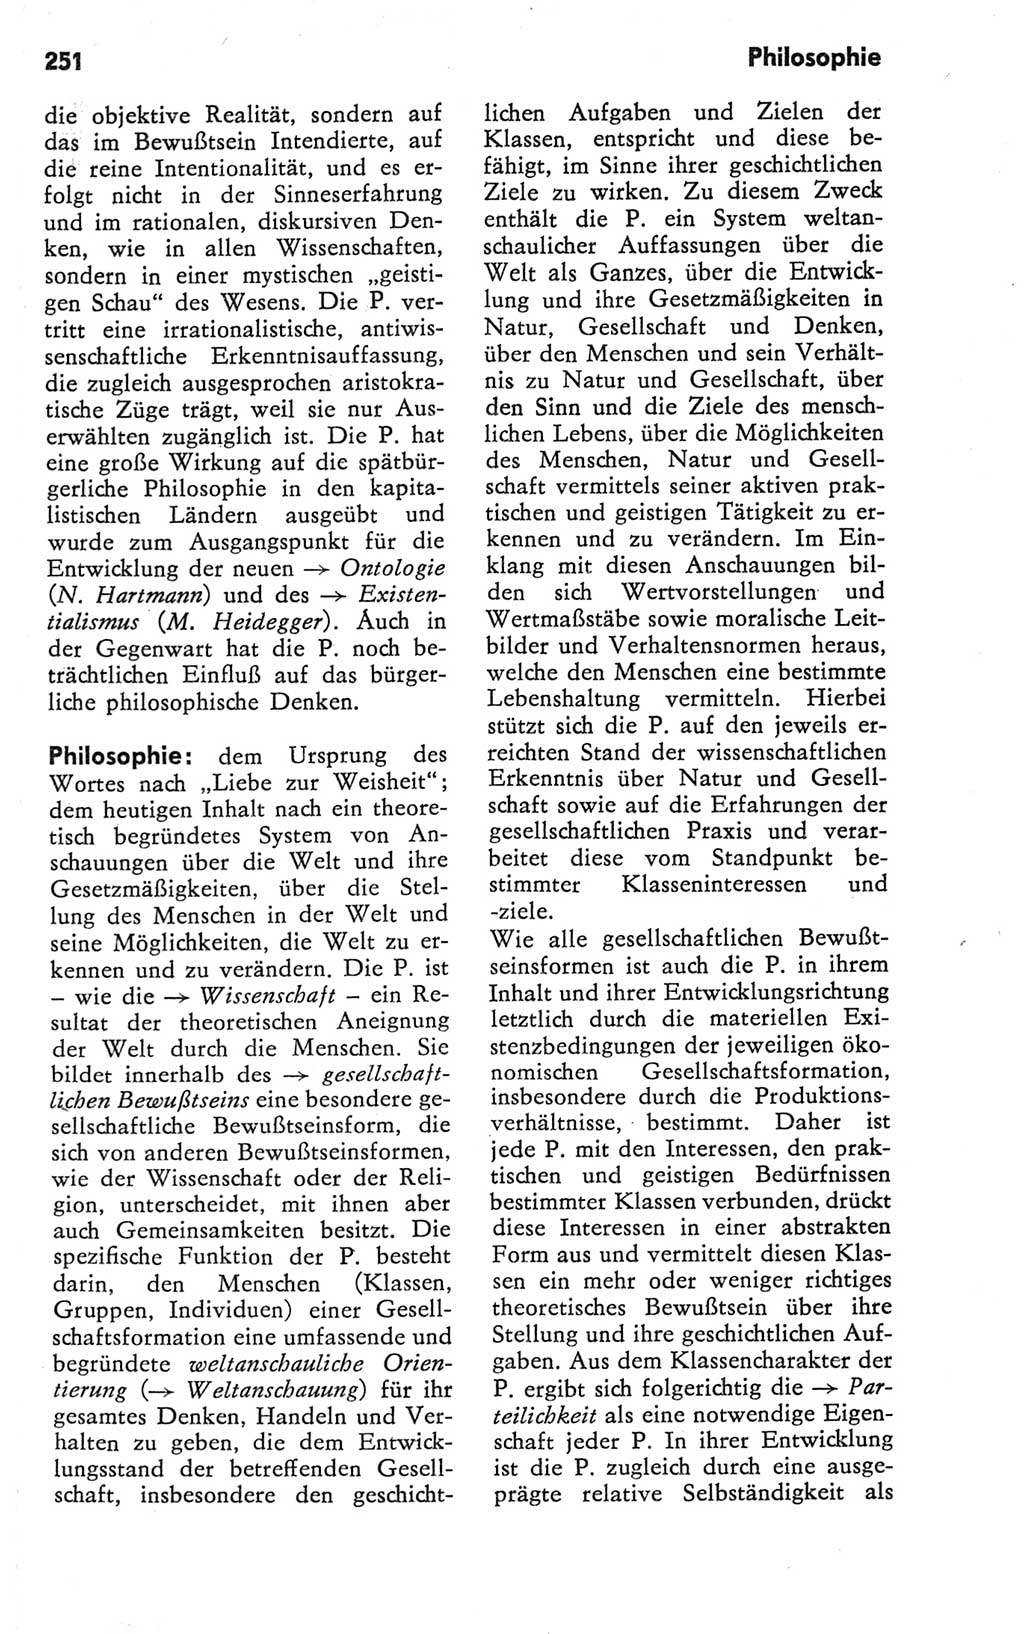 Kleines Wörterbuch der marxistisch-leninistischen Philosophie [Deutsche Demokratische Republik (DDR)] 1981, Seite 251 (Kl. Wb. ML Phil. DDR 1981, S. 251)